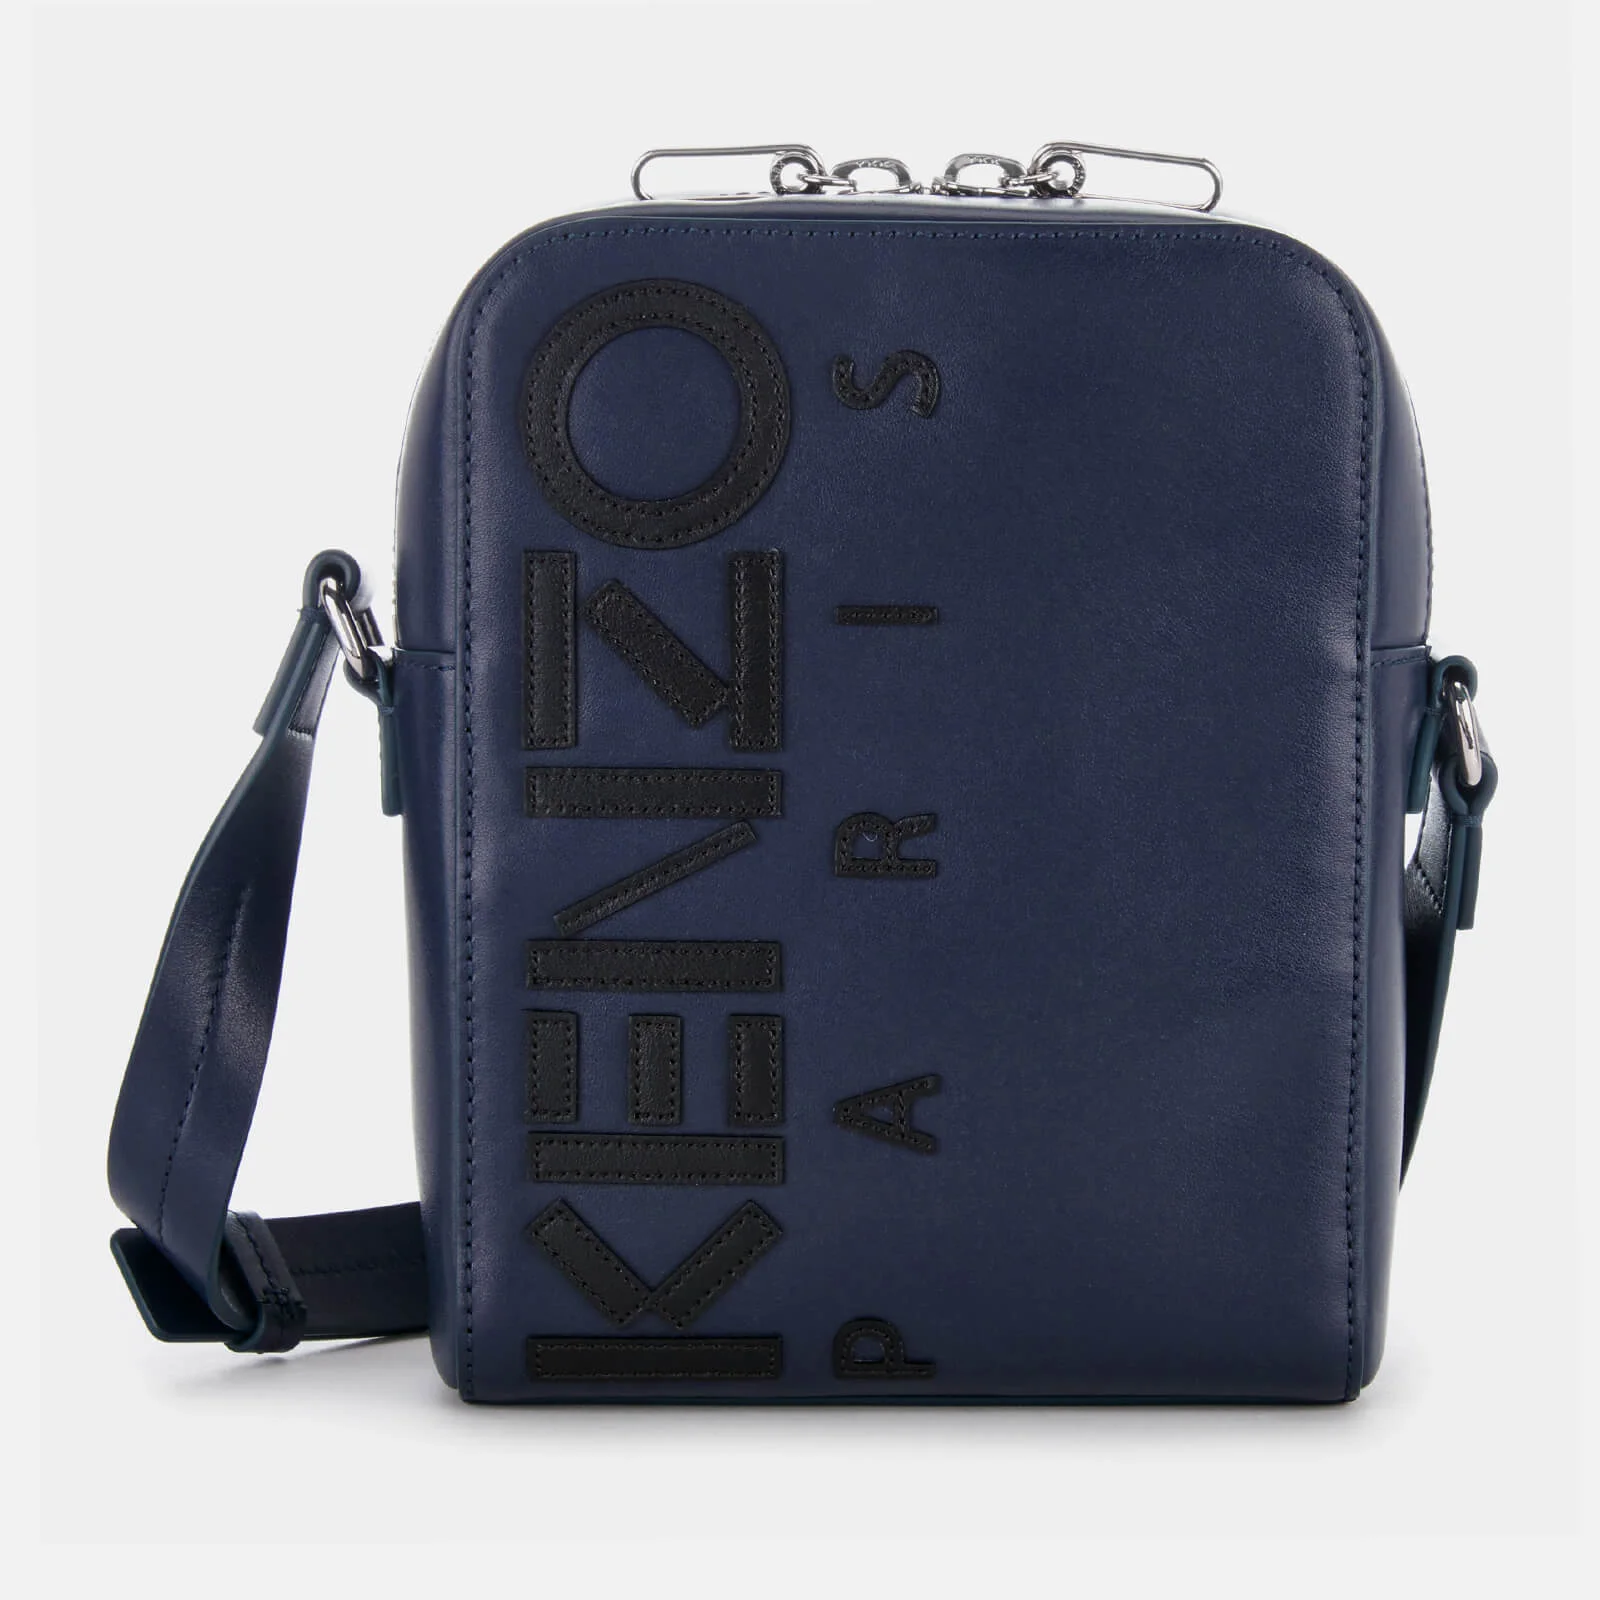 KENZO Men's Calfskin Cross Body Bag - Navy Blue Image 1